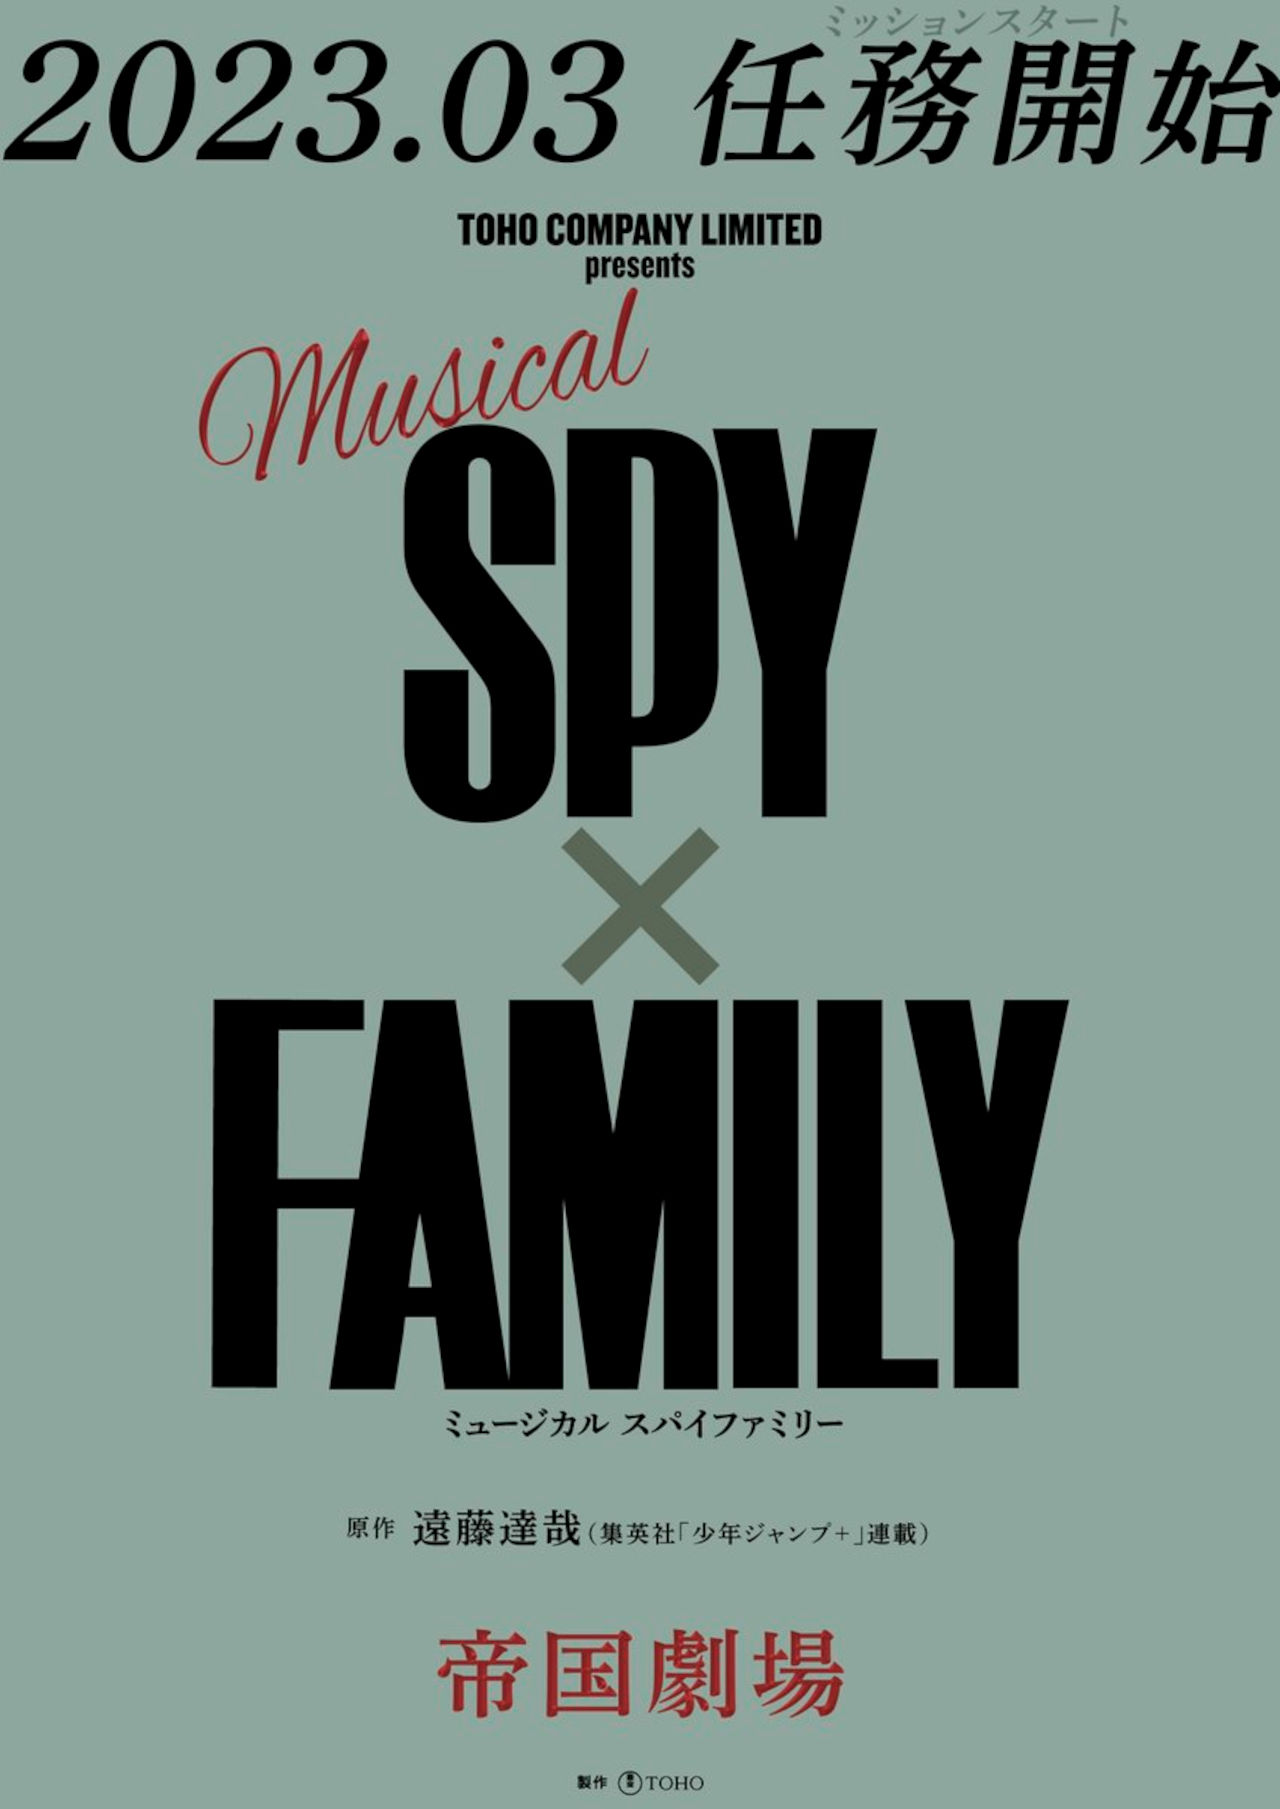 SPY x FAMILY se convertirá en musical con una puesta en escena